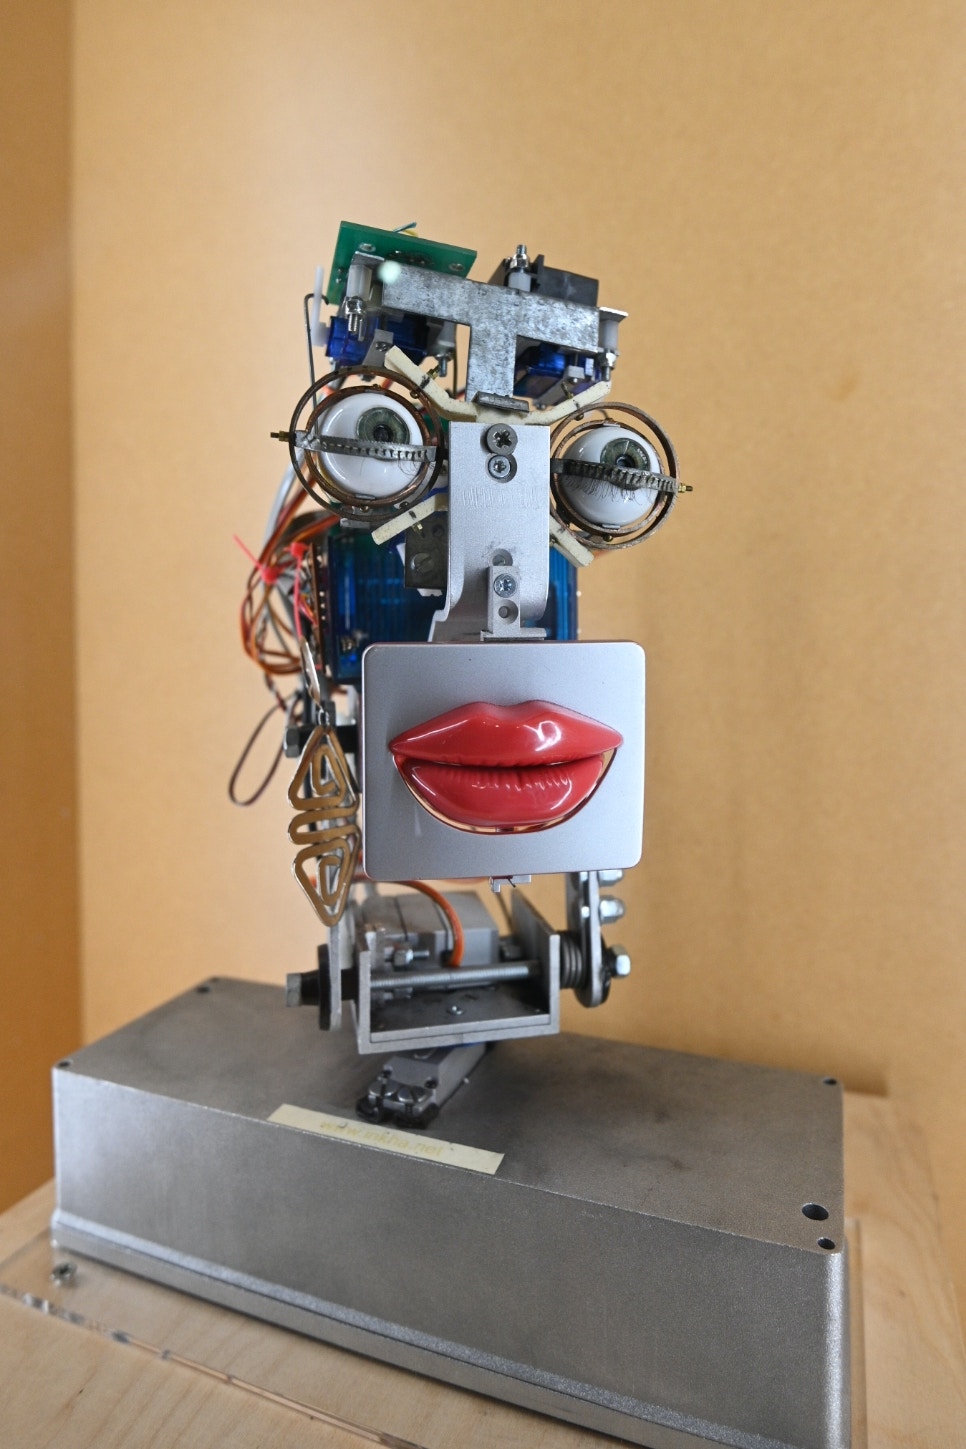 科學館明起舉行機械人展覽一睹世上最像真 仿生少女 機械人 香港01 社會新聞